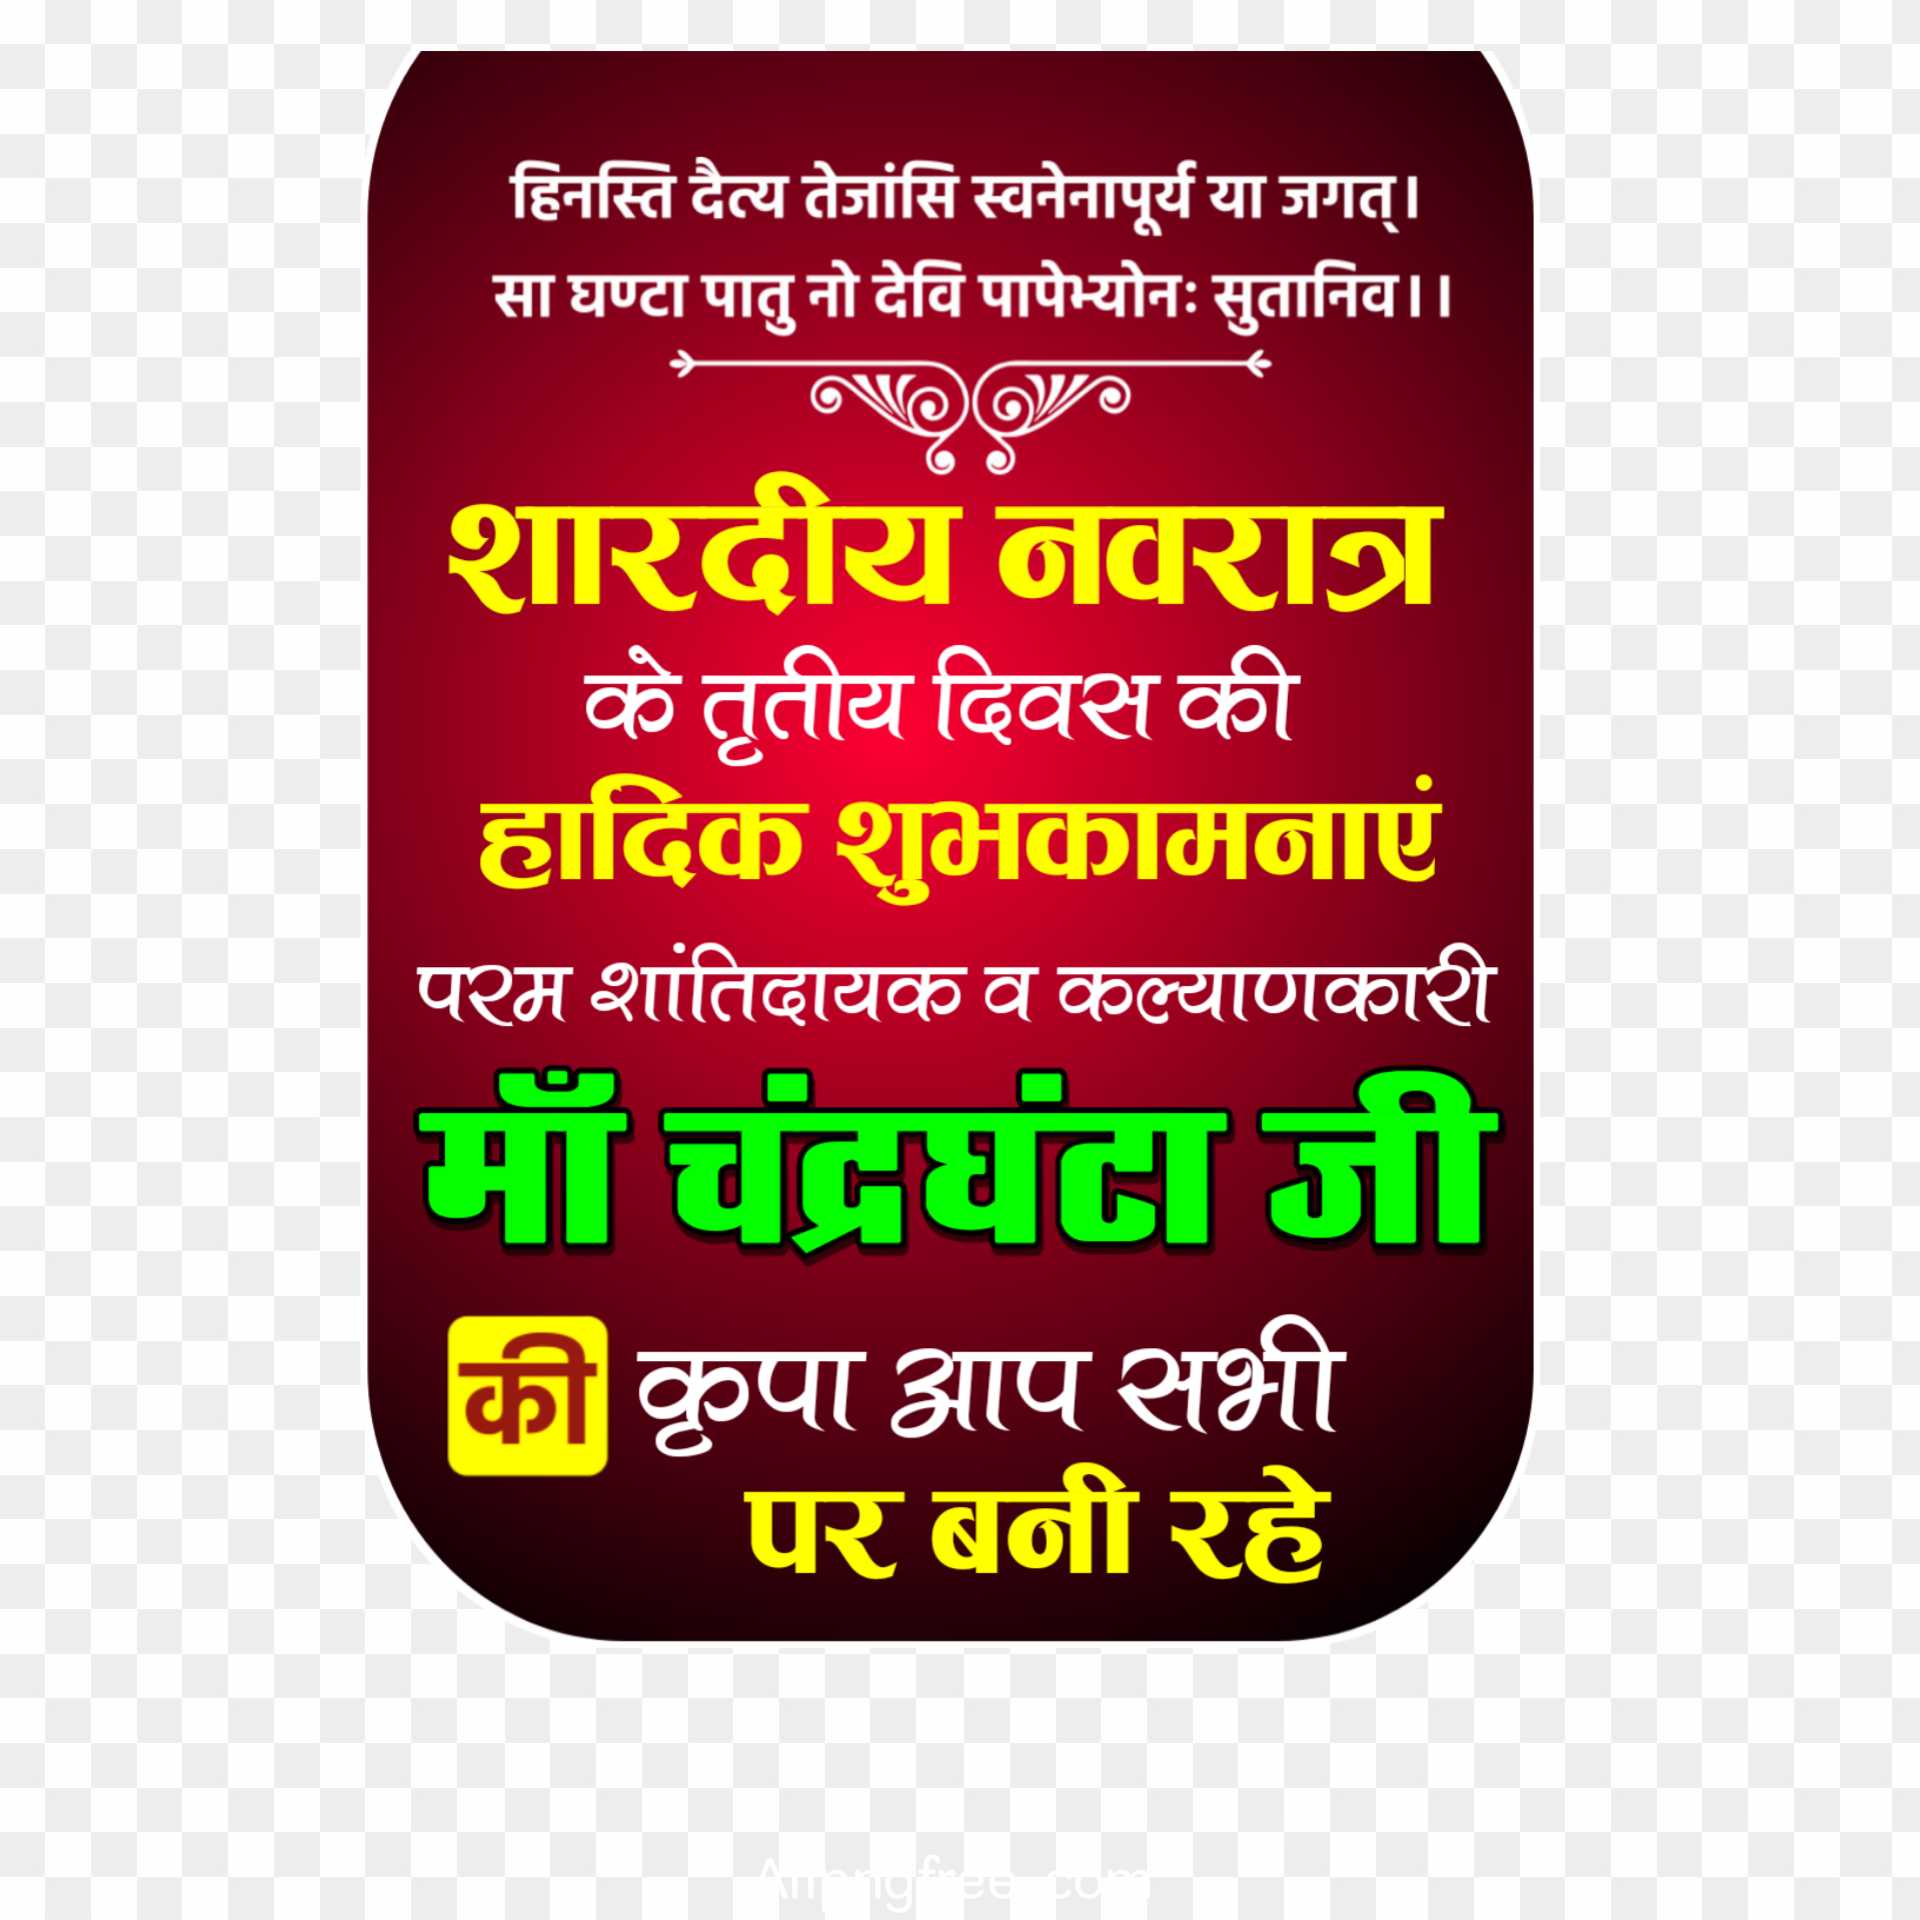 Maa Chandraghanta Navratri Text Png images download 